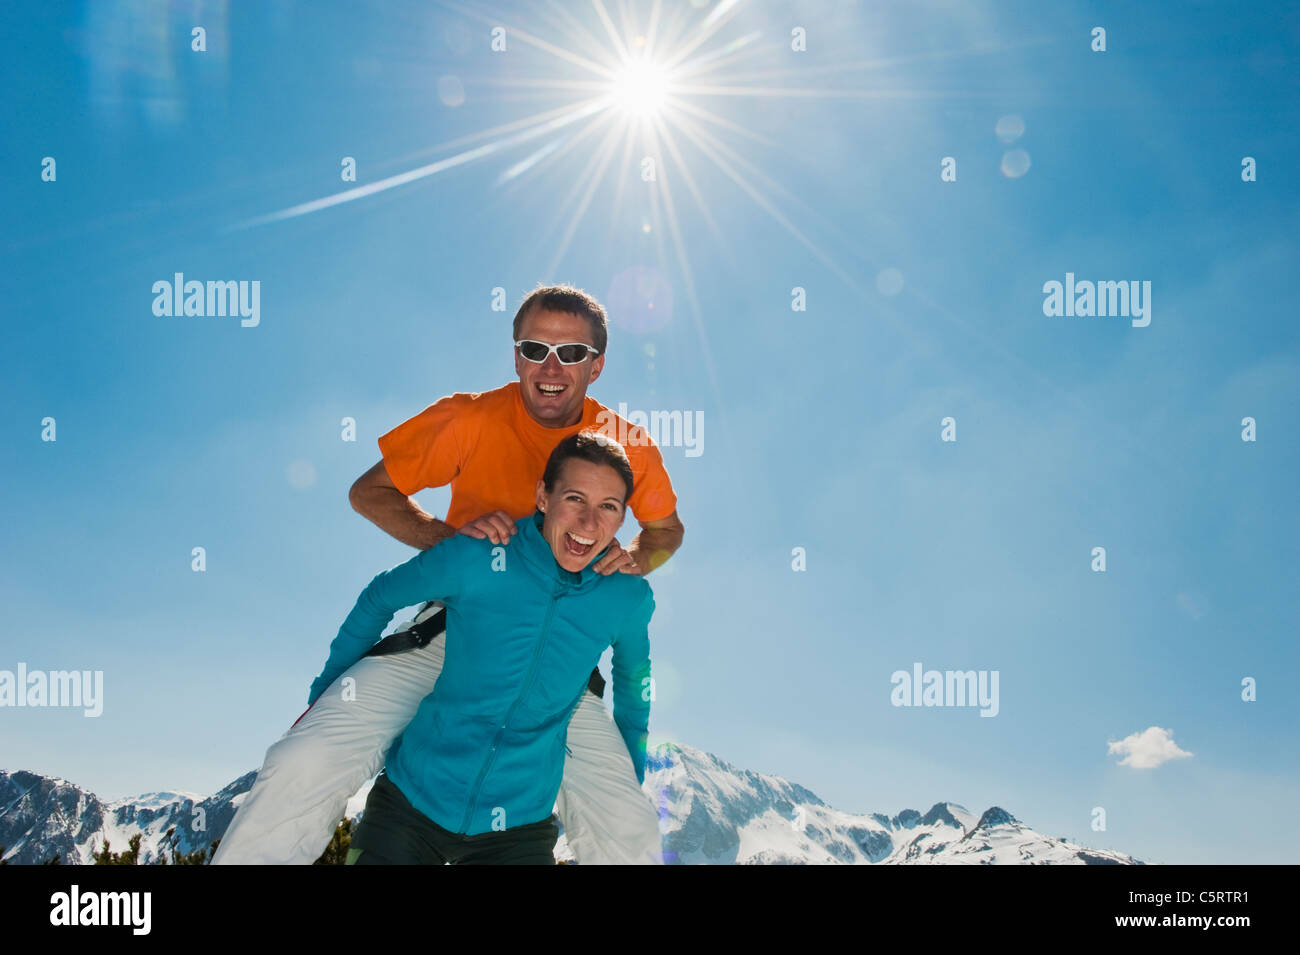 Österreich, Salzburger Land, Altenmarkt-Zauchensee, Mitte erwachsenen Mann springt über Frau im winter Stockfoto